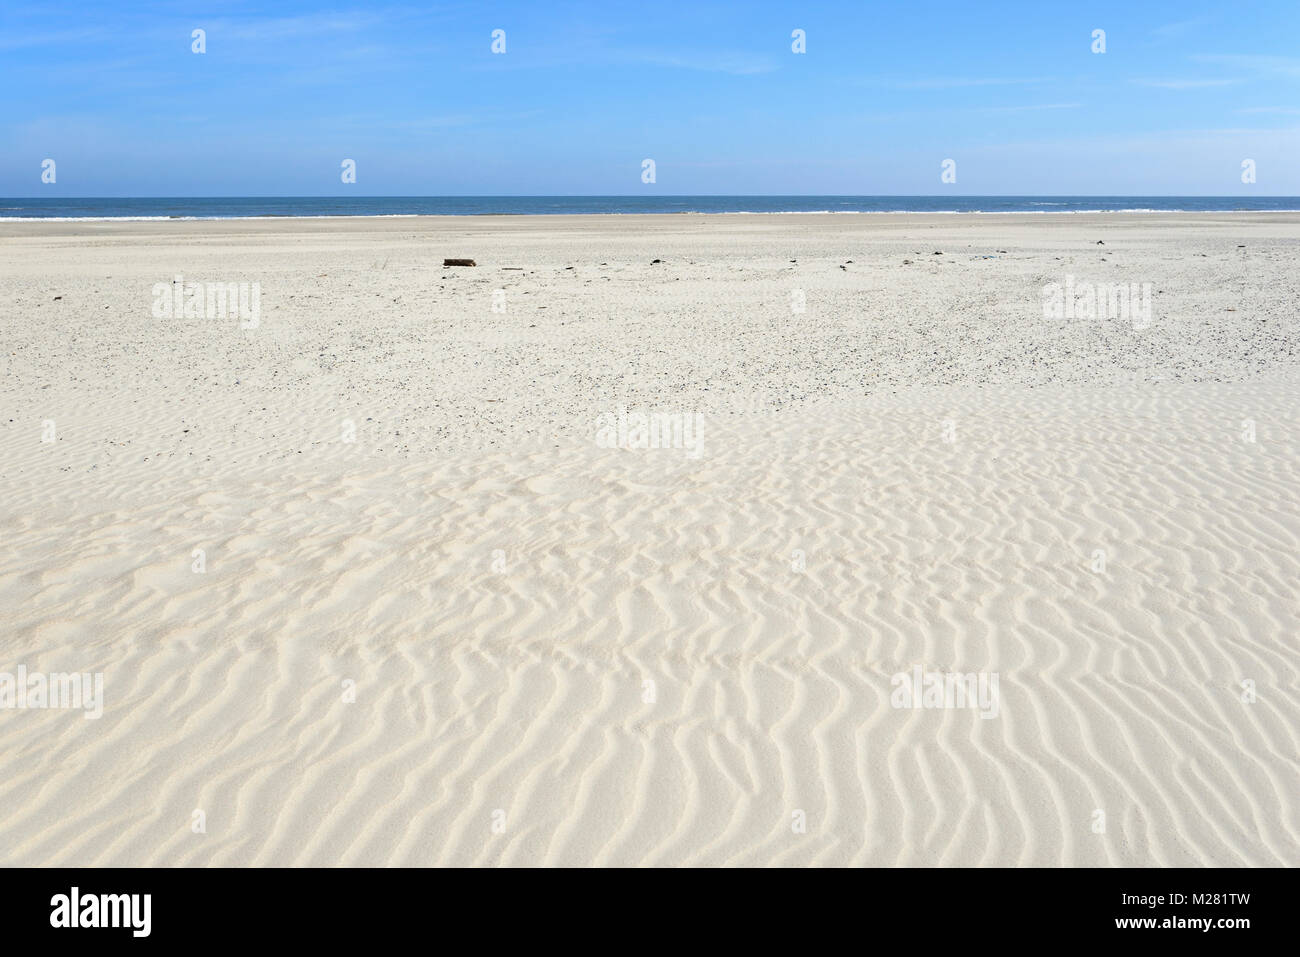 Plage de sable blanc, structure en forme de vague dans le sable, ondulation, Mer du Nord, Norderney, îles de la Frise orientale, Basse-Saxe, Allemagne Banque D'Images